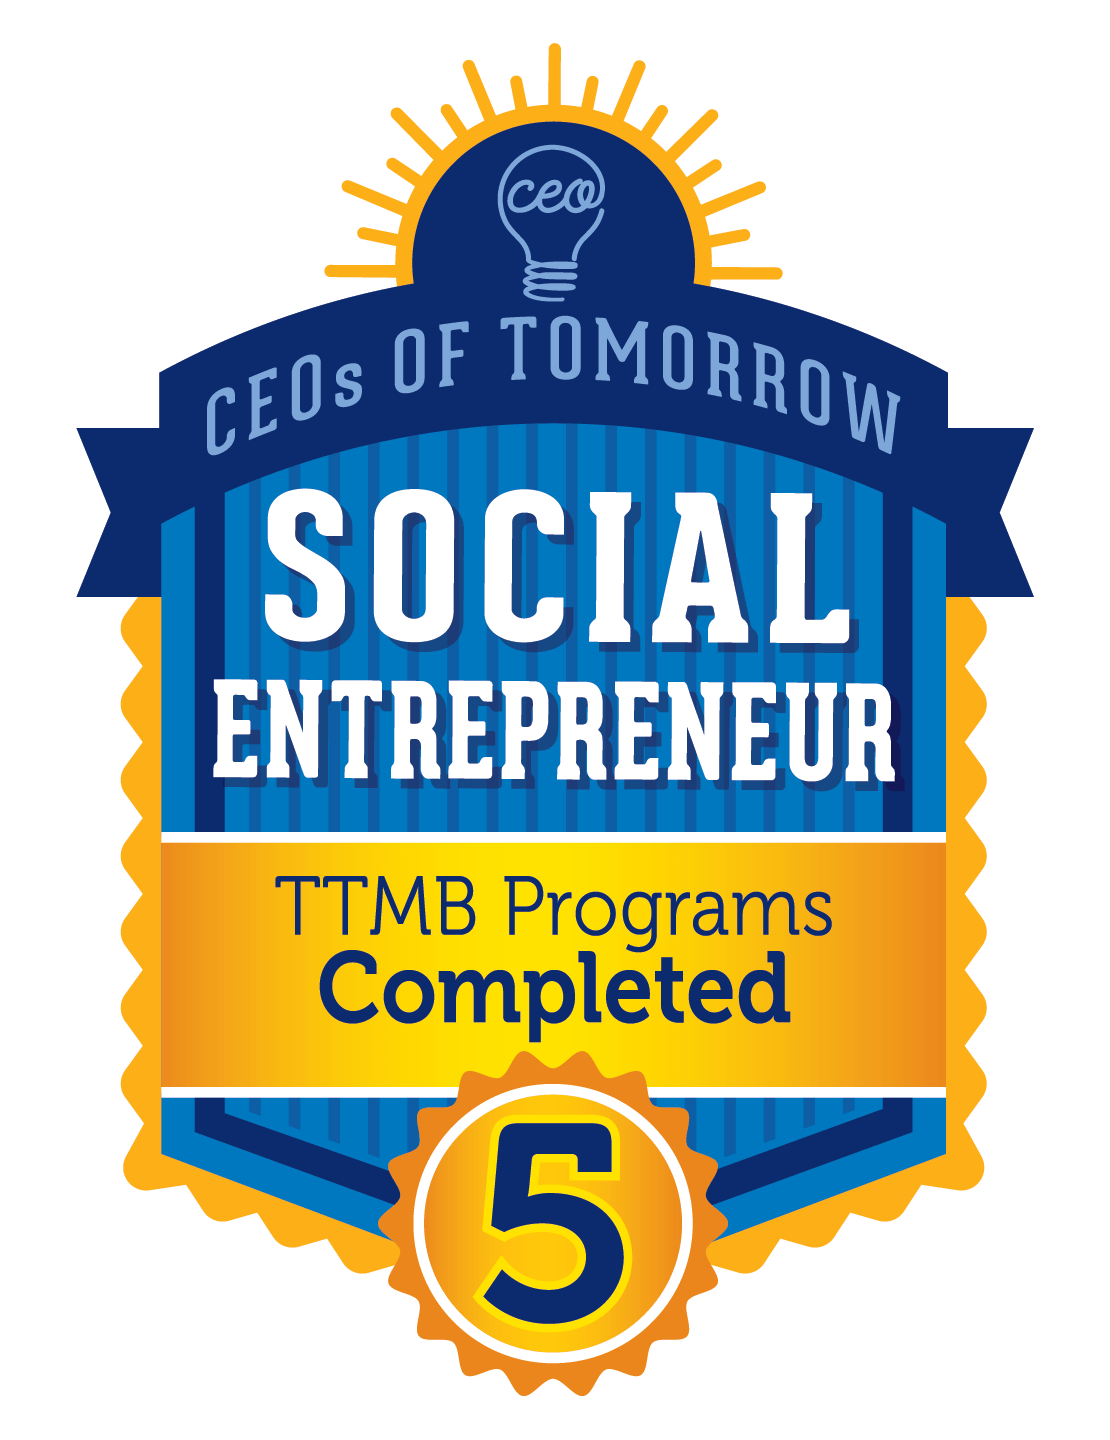 Social Entrepreneur - 5 TTMB Programs Completed